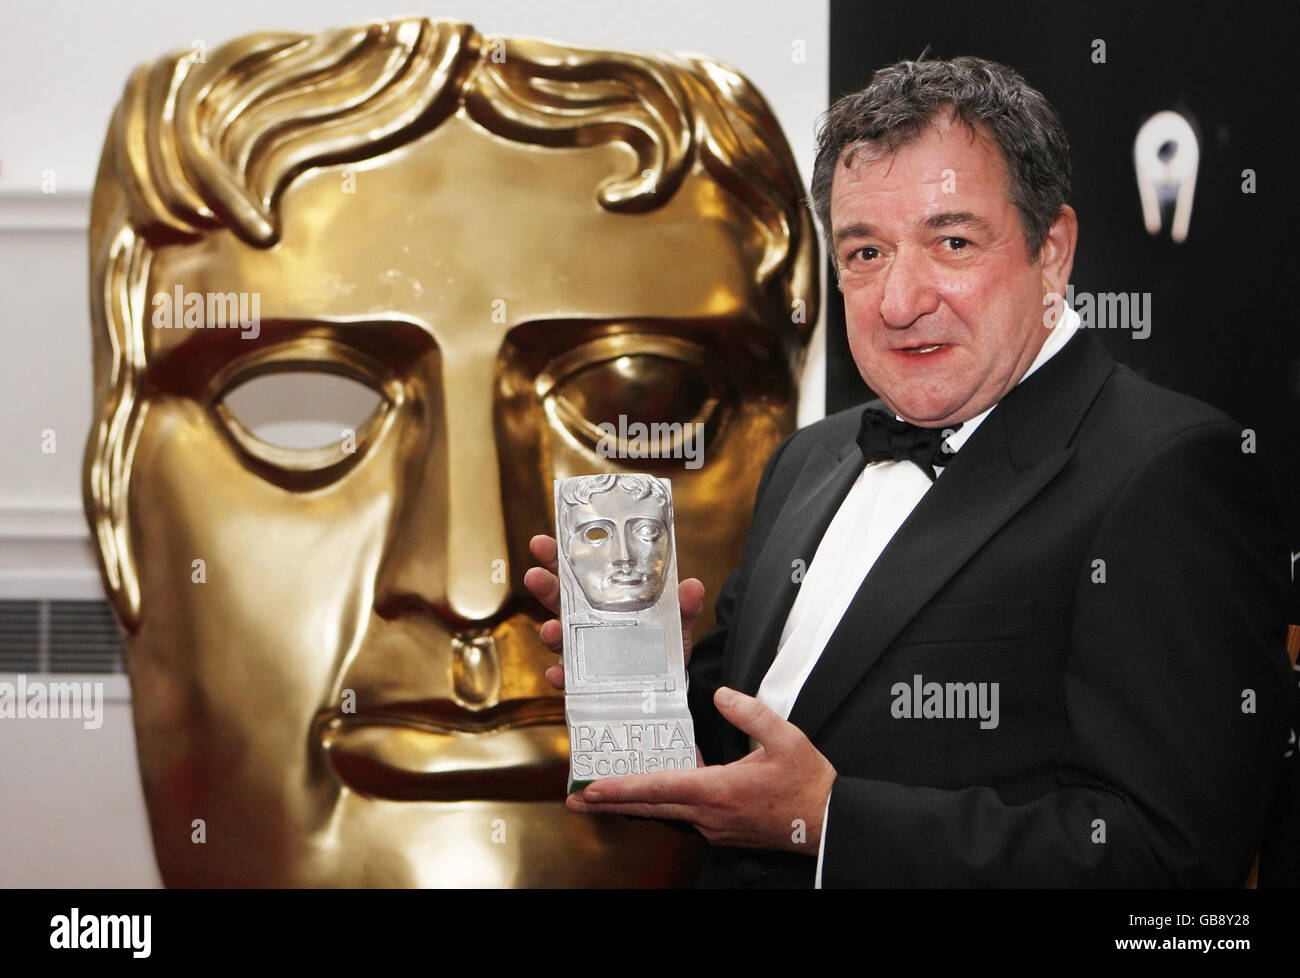 Ken Stott avec son prix pour la meilleure action Performance à la télévision lors de la cérémonie des BAFTA Scotland Awards à City Halls, Glasgow. Banque D'Images